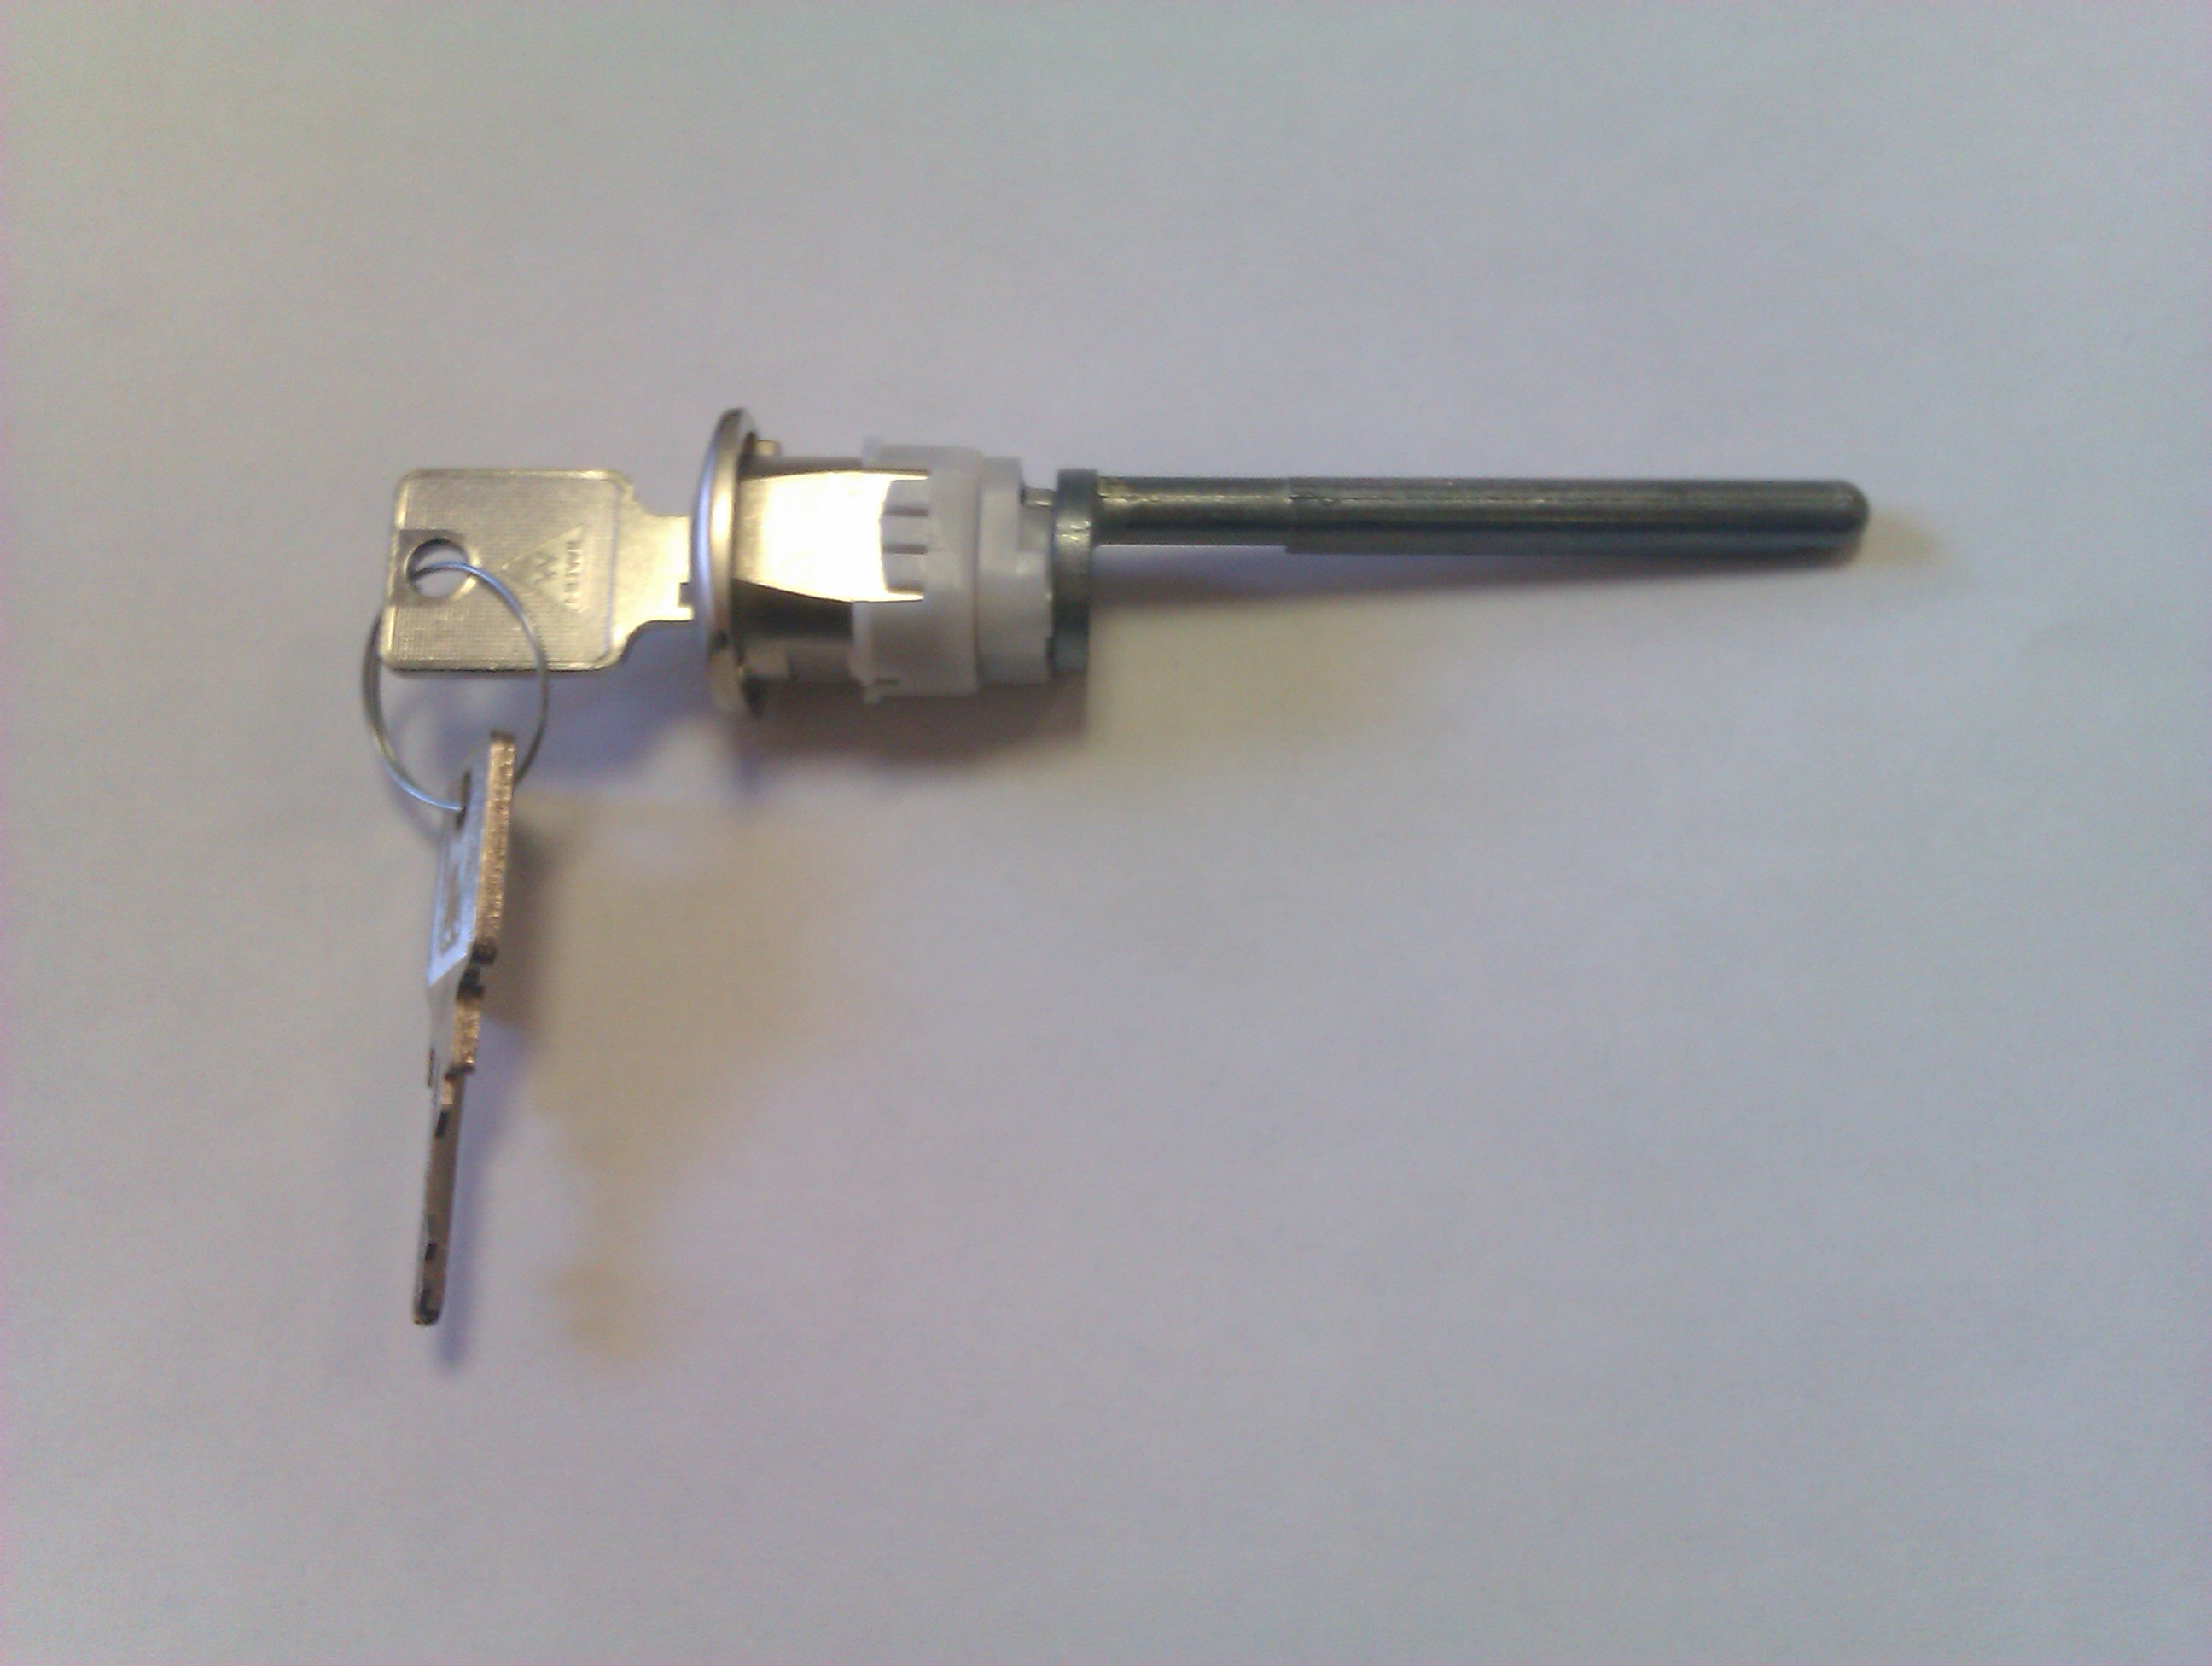 Keyspleasecouk Ammerhurst Ltd Locksmith Uk Replacement Keys intended for size 2592 X 1952